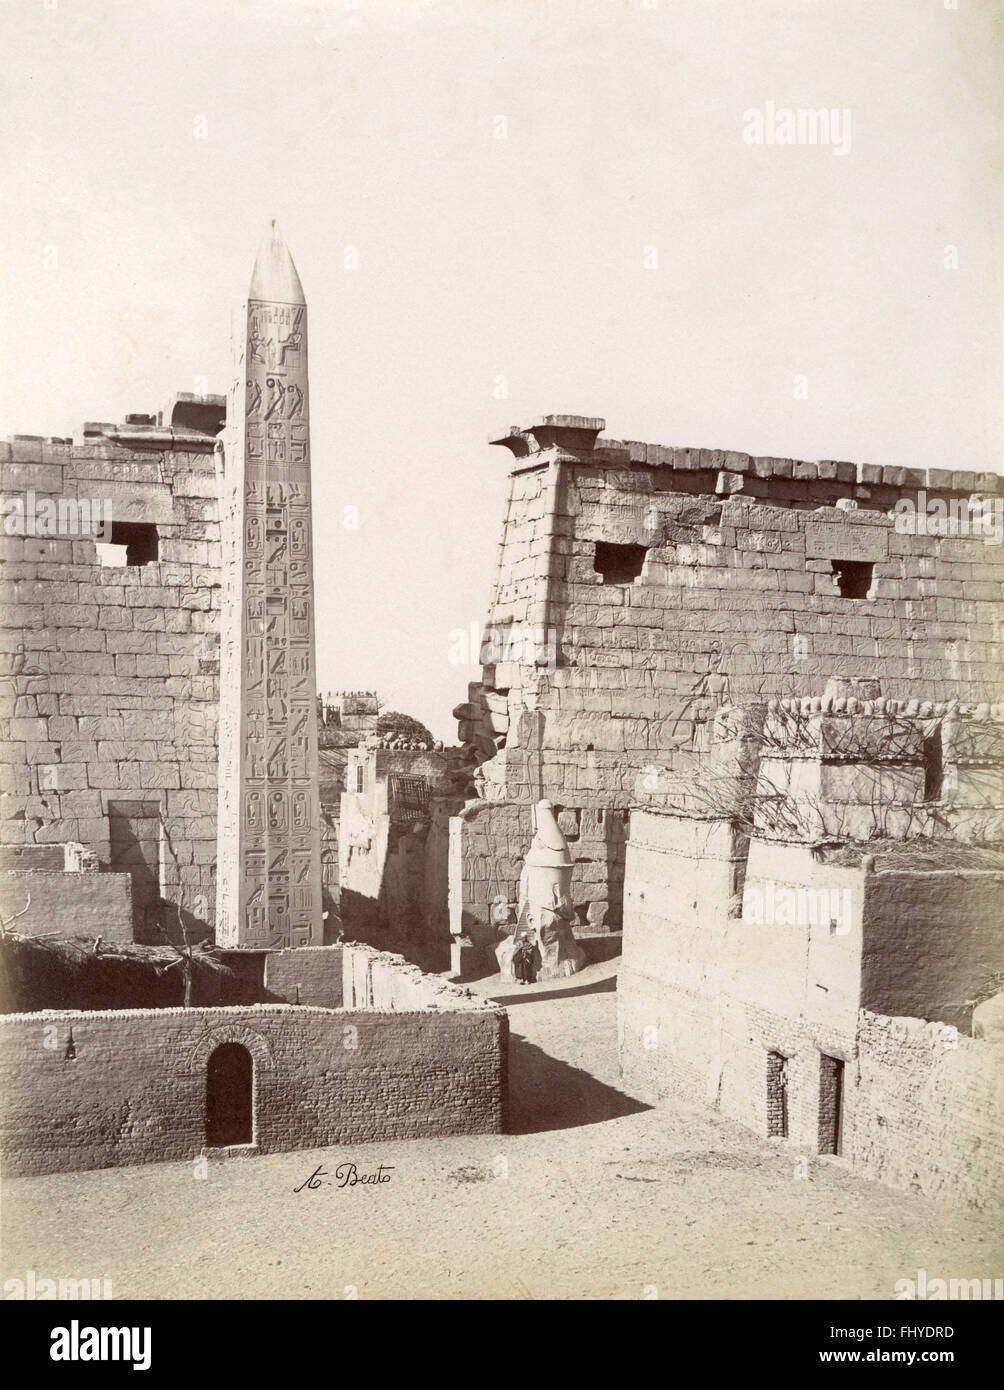 L'obélisque d'Hatshepsout, Karnak, Egypte Banque D'Images